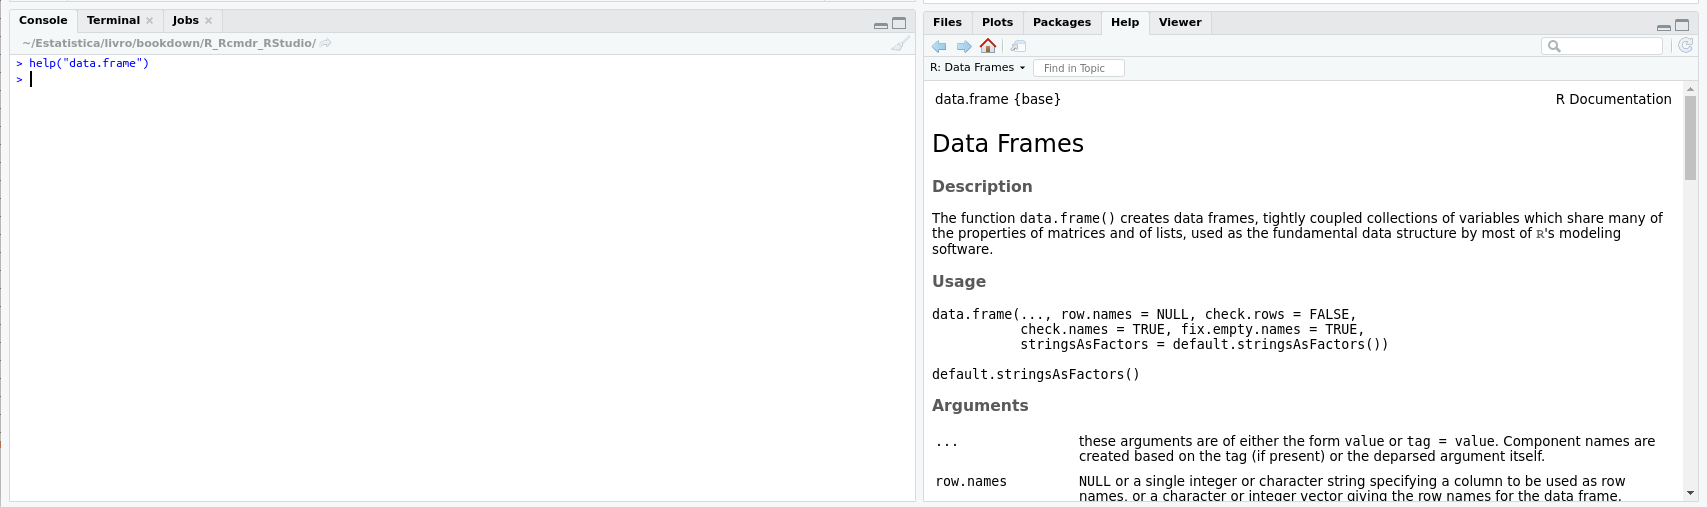 Aba de Ajuda do RStudio, mostrando a descrição e os argumentos da função data.frame.